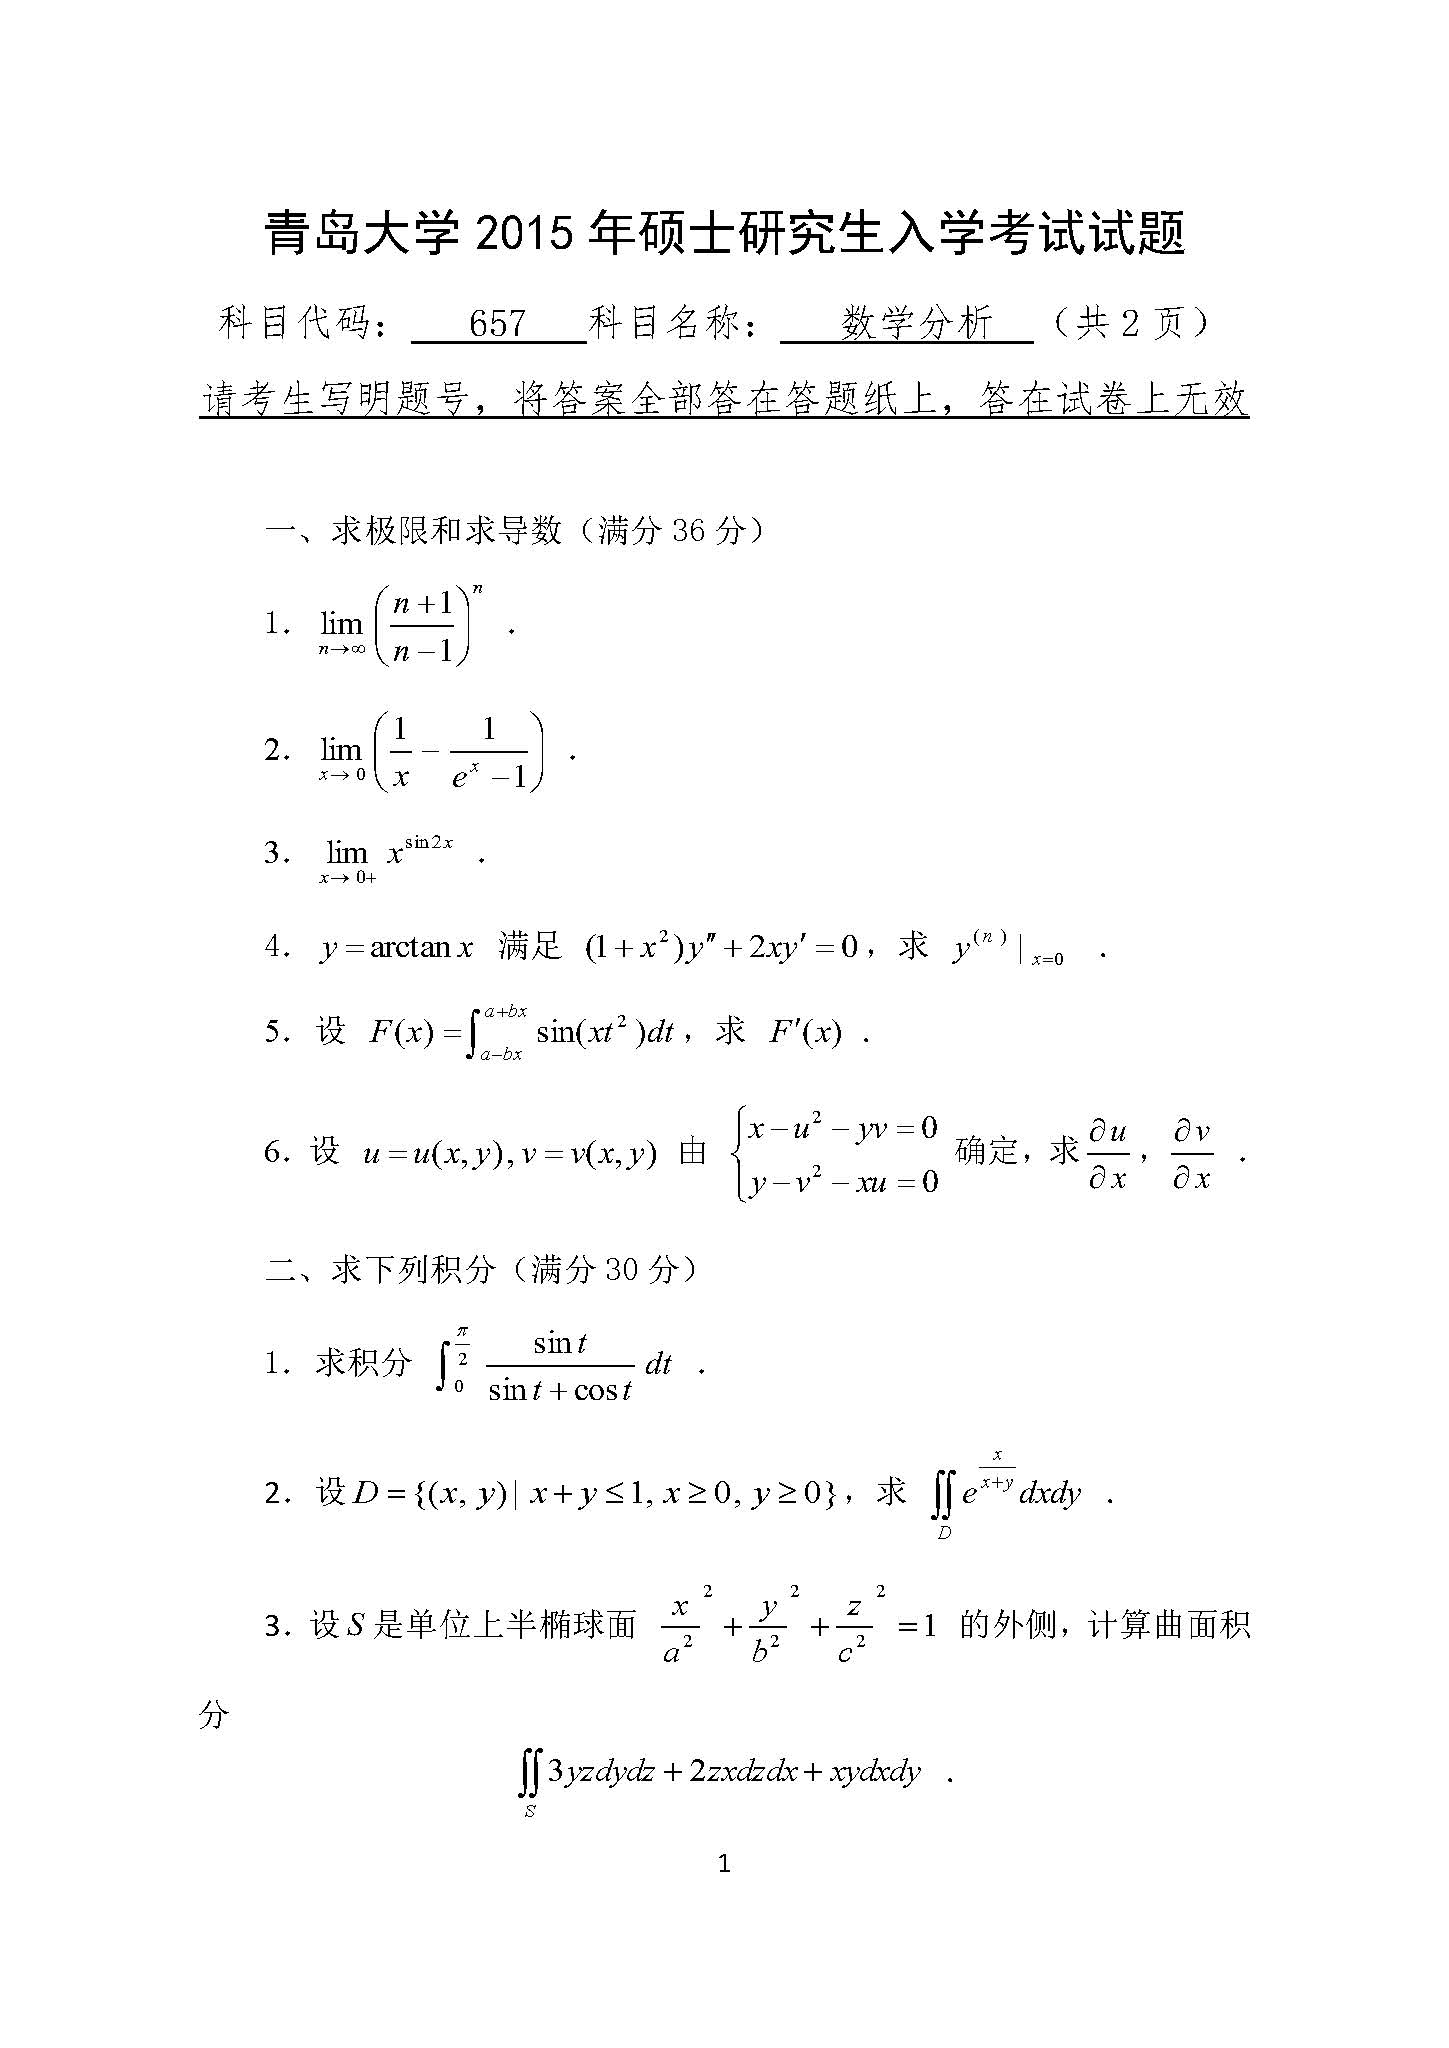 657数学分析2015年考研初试试卷真题青岛大学